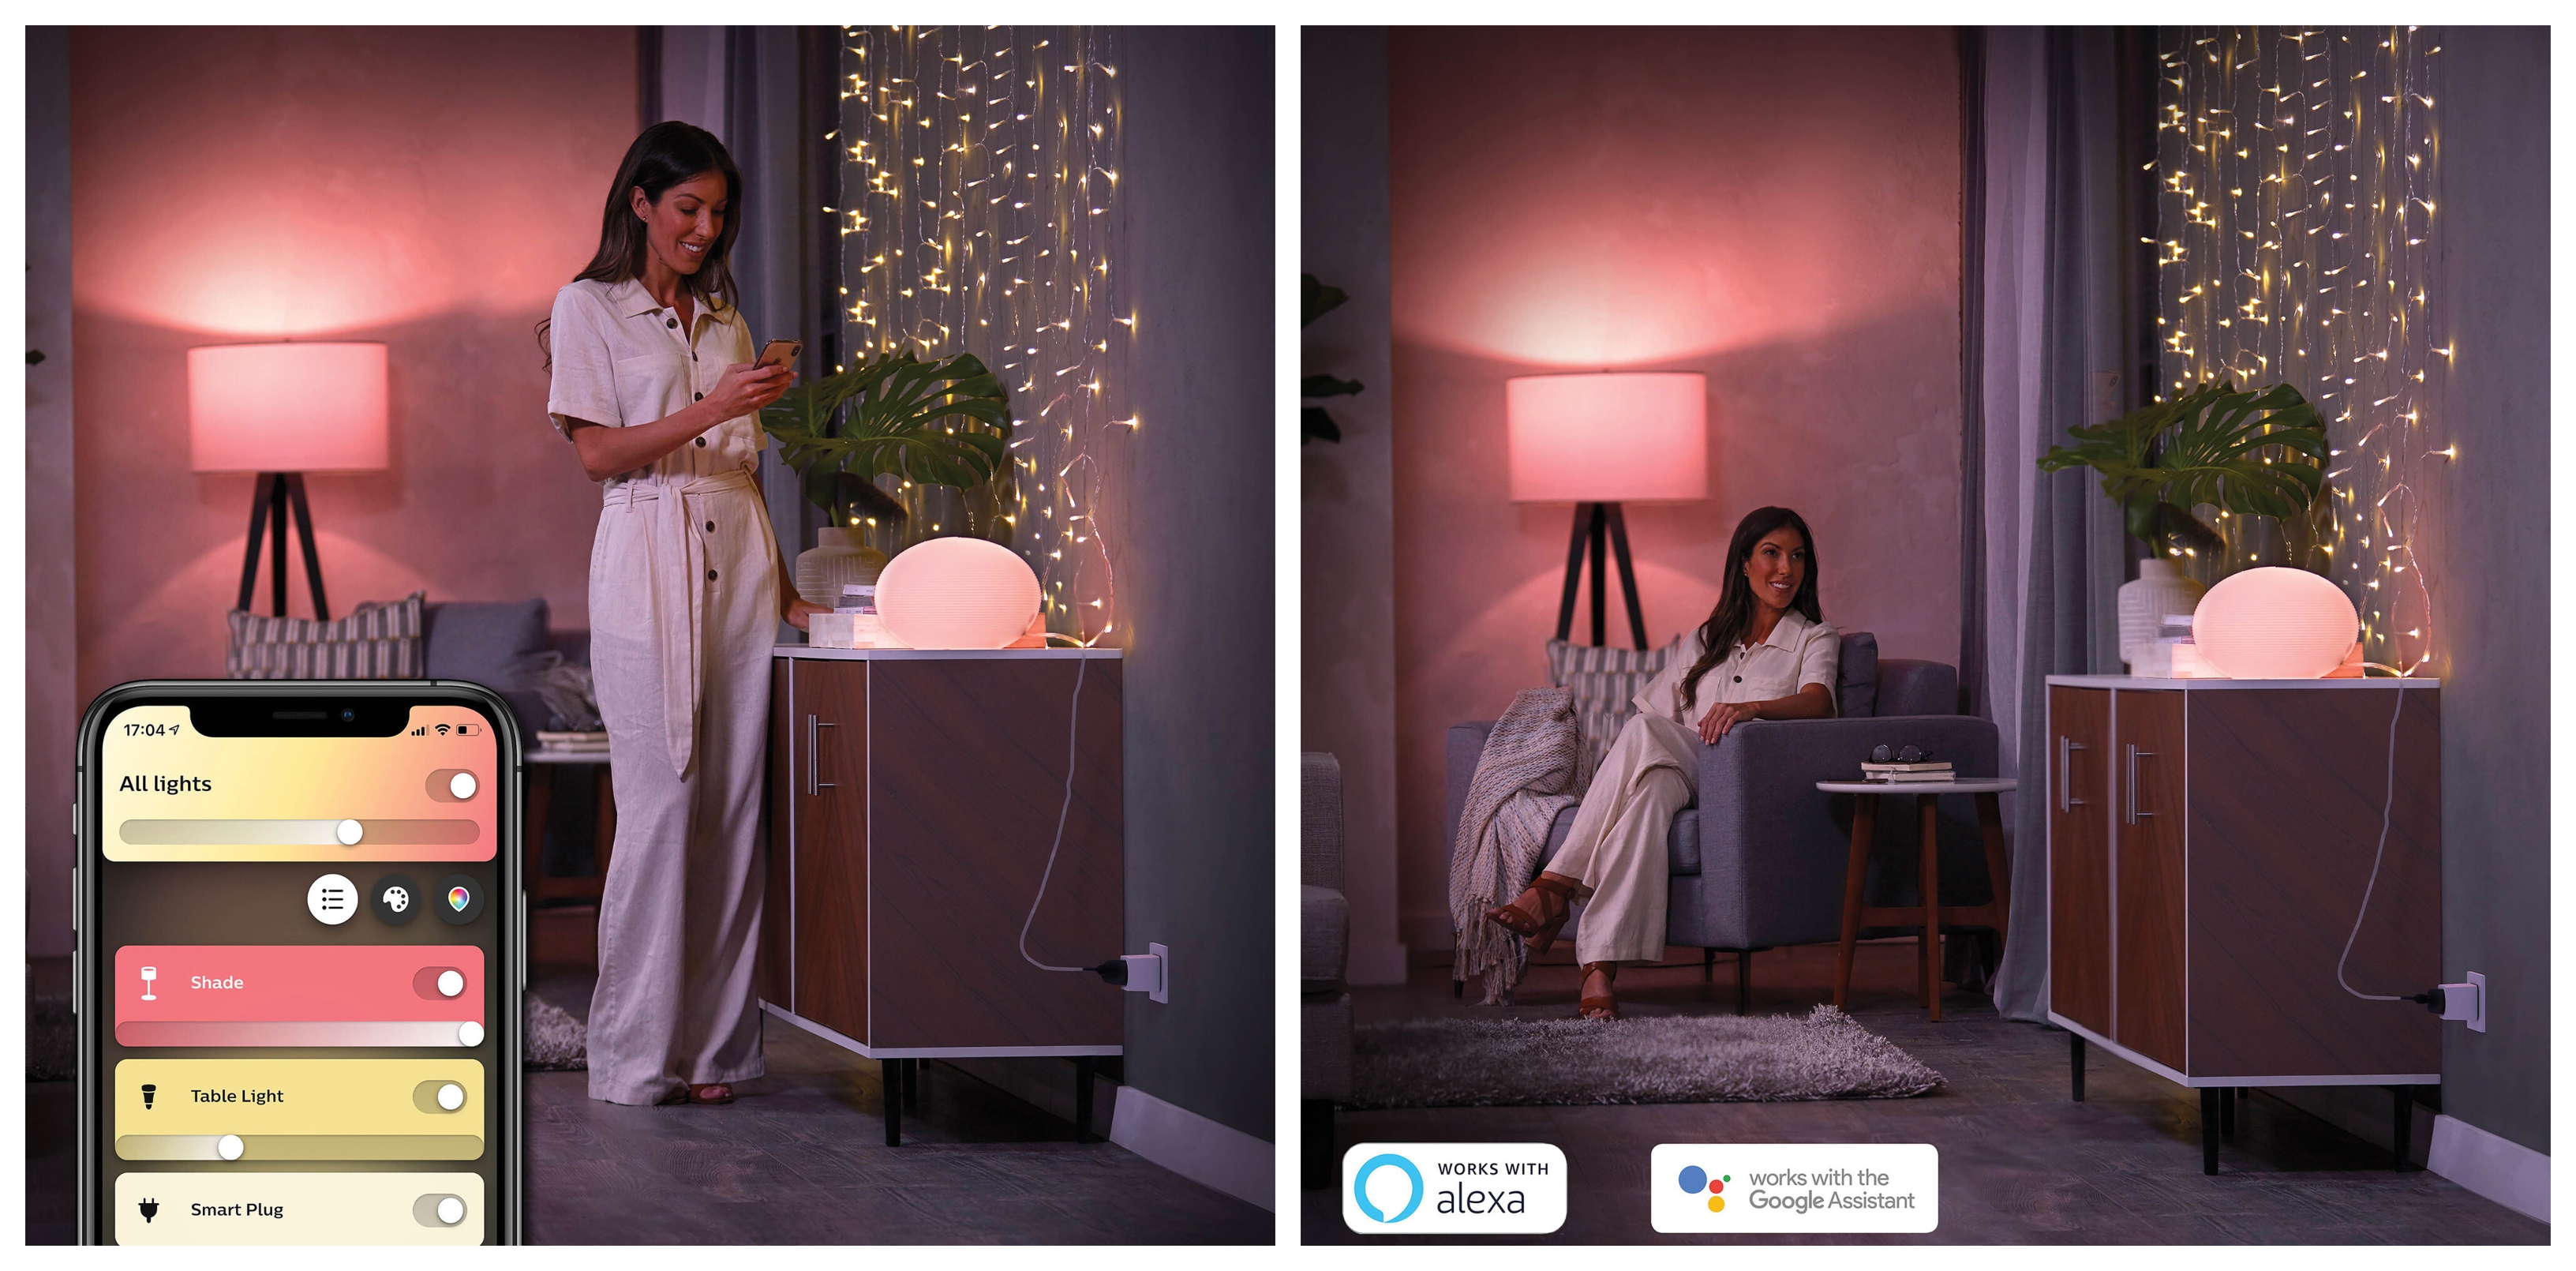 Chytrá zásuvka Philips Hue Smart Plug dokáže premeniť bežnú lampičku, žiarovku a ďalšie svietidlá na chytré osvetlenie, ktoré je plne kompatibilné s mobilnou aplikáciou Hue as hlasovými asistentmi Apple HomeKit, Google Assistant, Amazon Alexa alebo Microsoft Cortana.